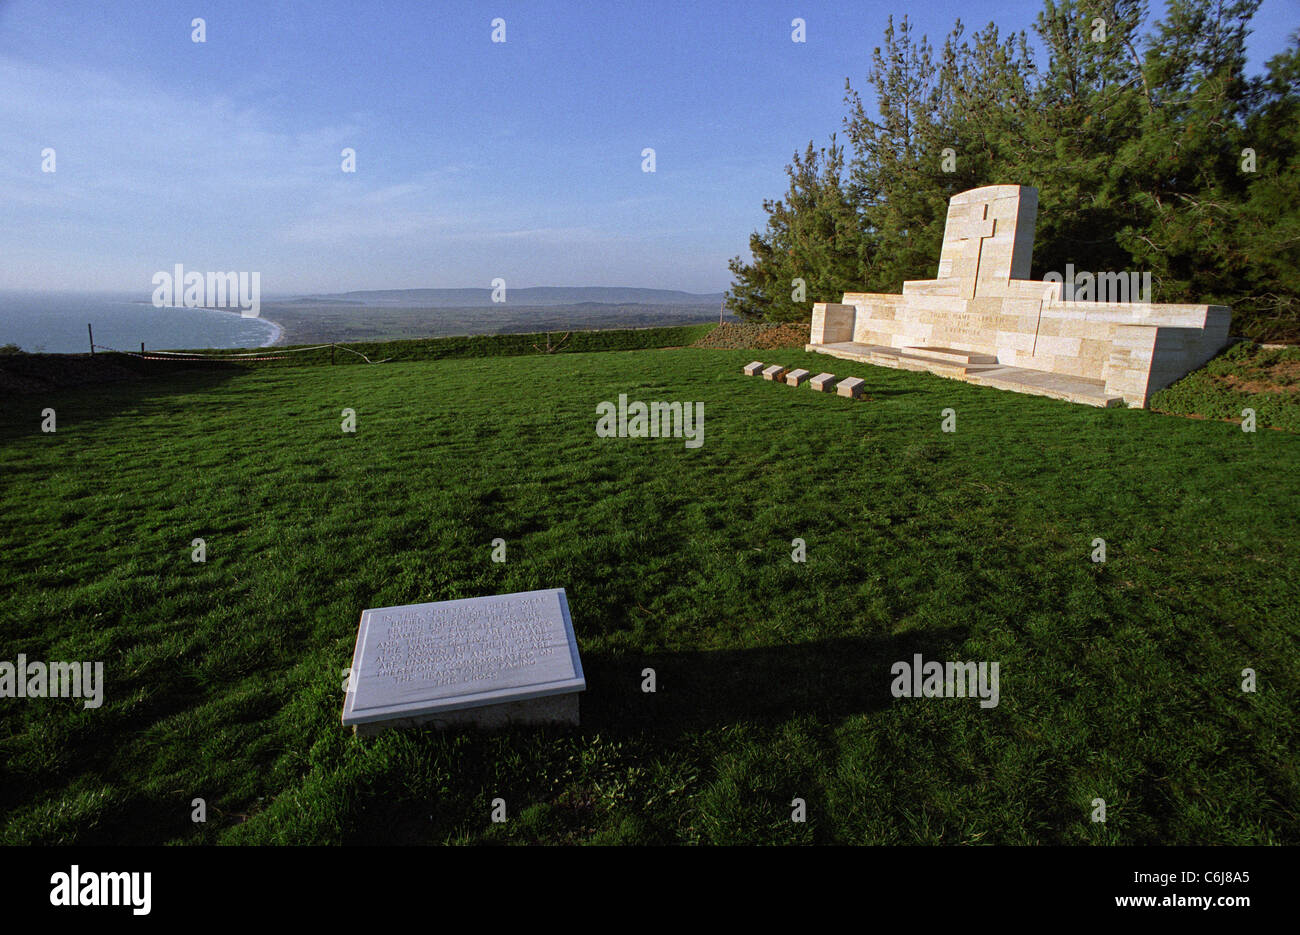 Die Nek Friedhof, Gallipoli Schlachtfeld Türkei 1915-Kampagne. Verwaltet von Commonwealth War Graves Commission. Stockfoto